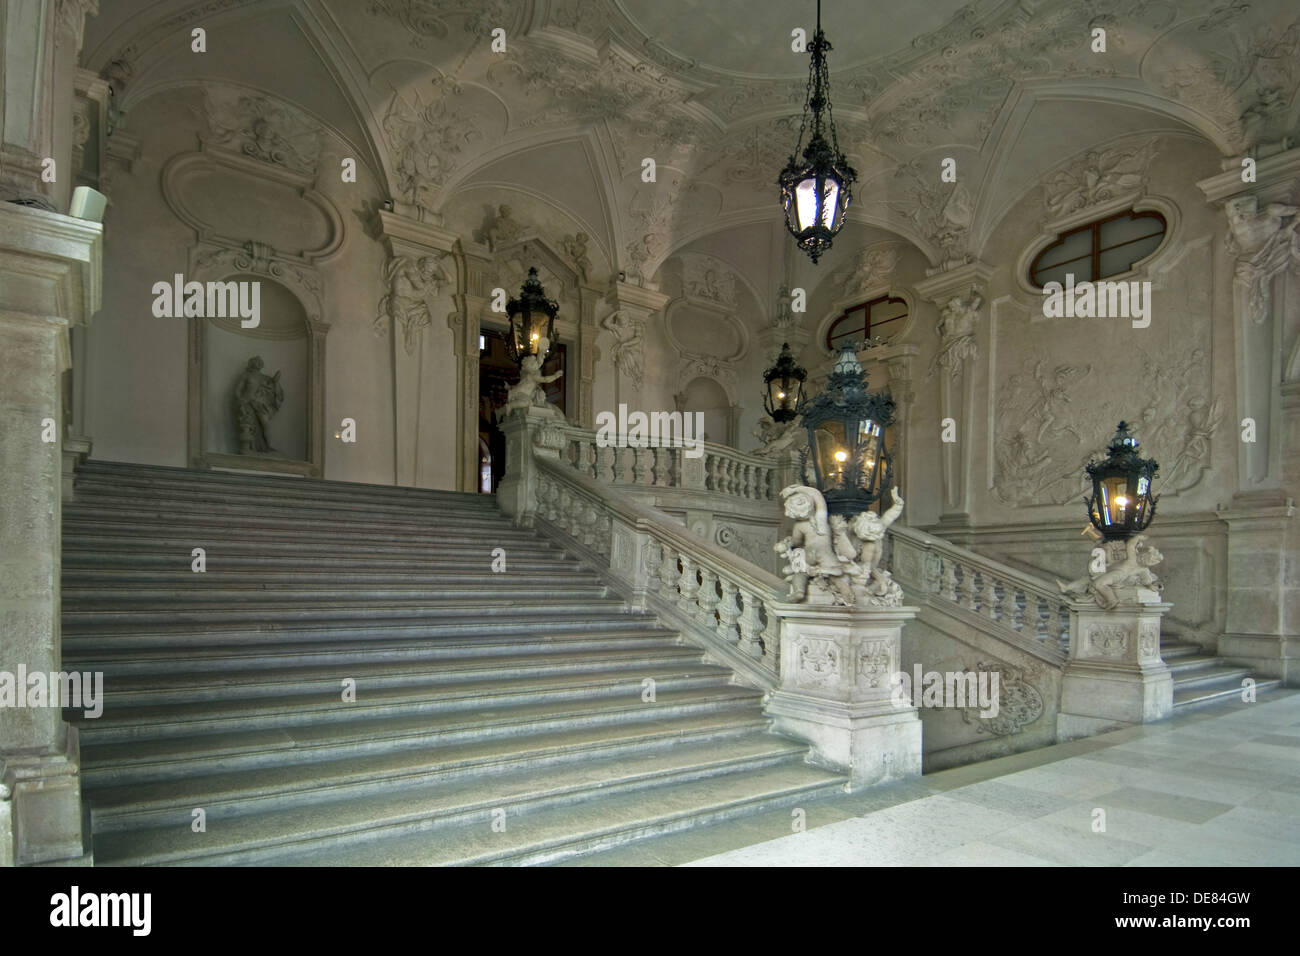 Österreich, Wien 3, Schloss Belvedere, Oberes Belvedere, die Prunkstiege. Foto Stock